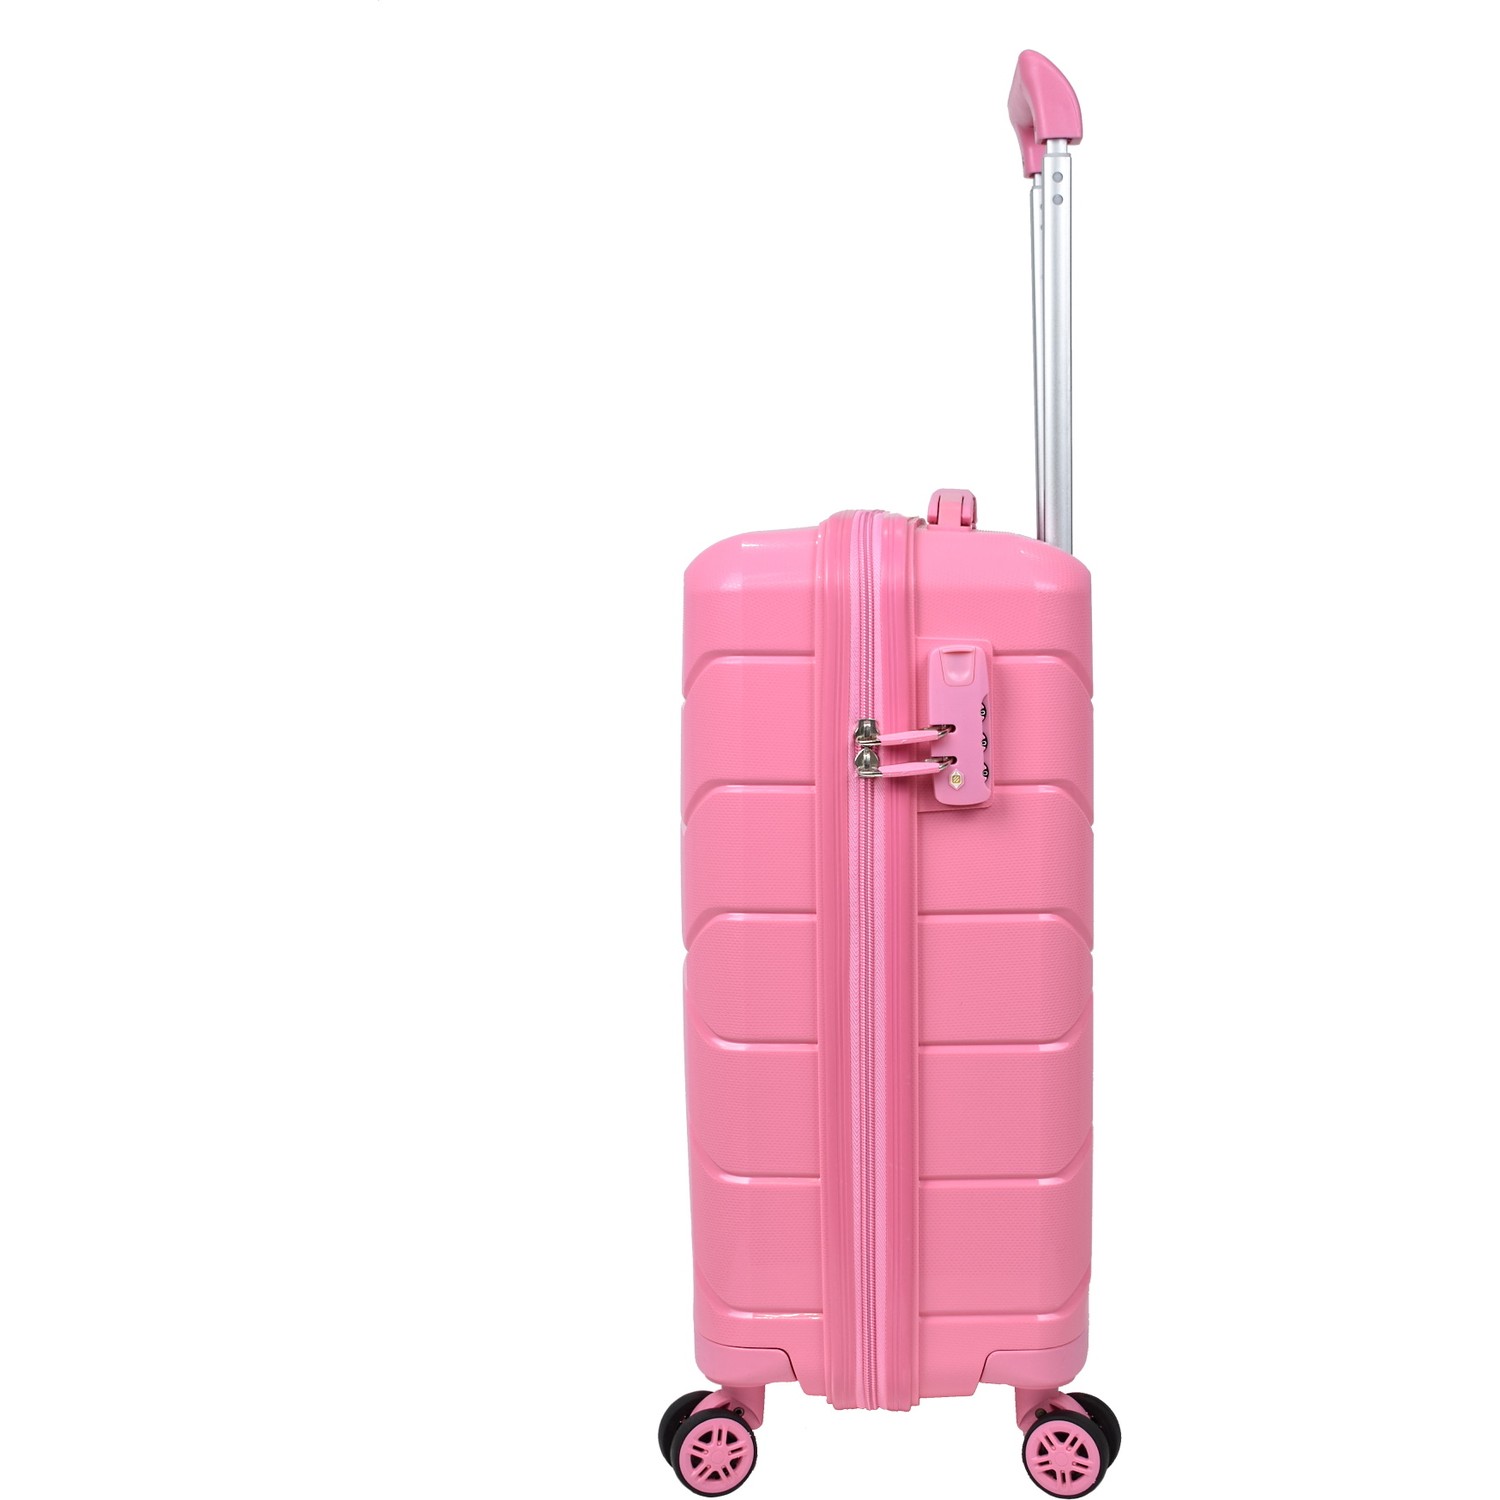 Маленький чемодан для ручьной клади из полипропилена MCS V366 S PUDRA! Для 8-10 кг! - 3